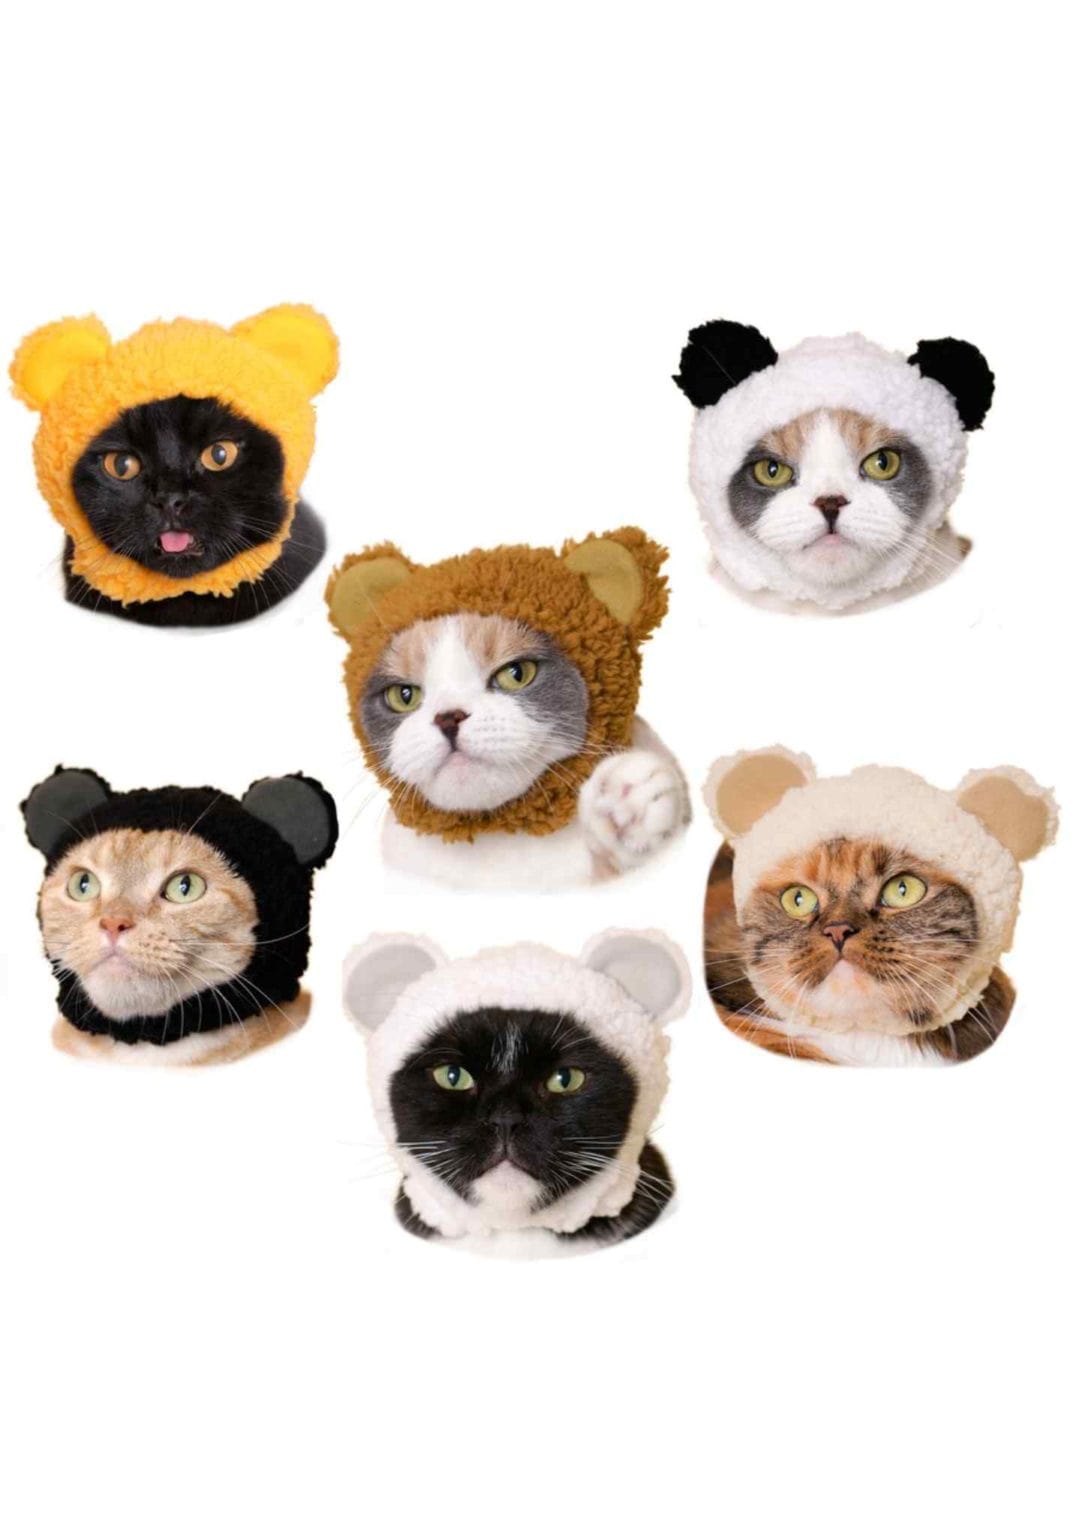 Clever Idiots Bear Cat Cap Surprise Box Kawaii Gifts 4580045300274